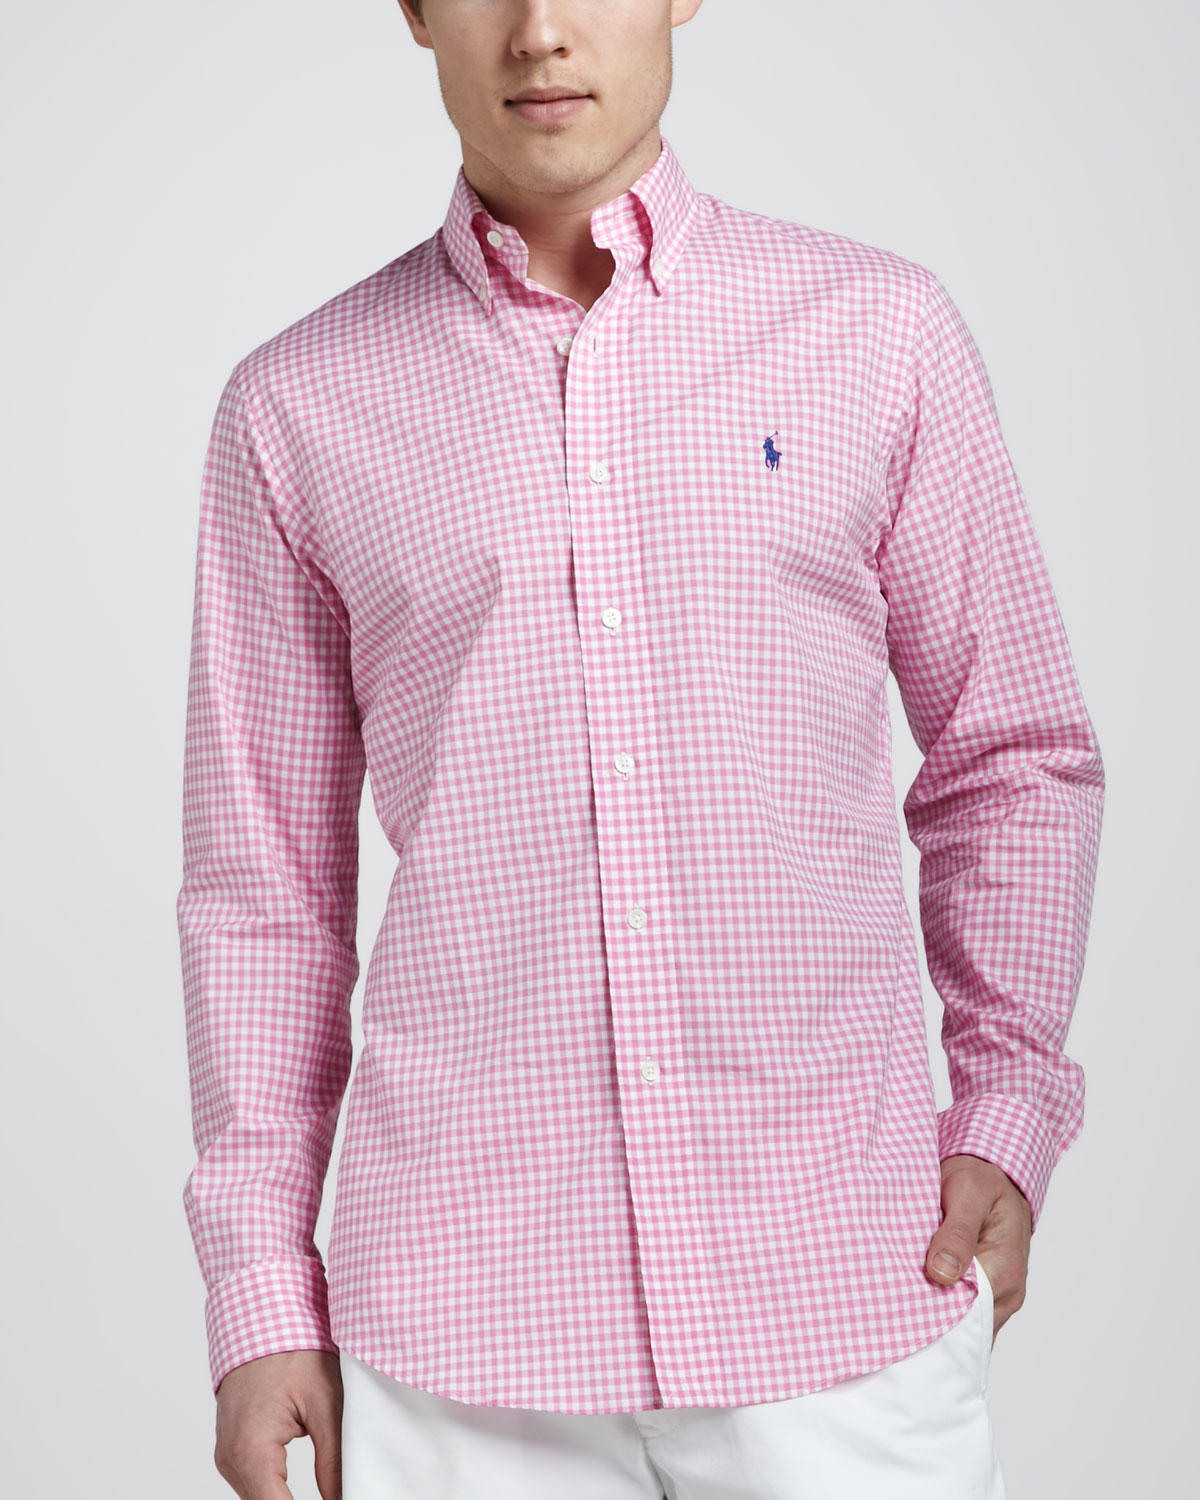 Lyst - Polo Ralph Lauren Customfit Gingham Shirt Pinkwhite in Pink for Men